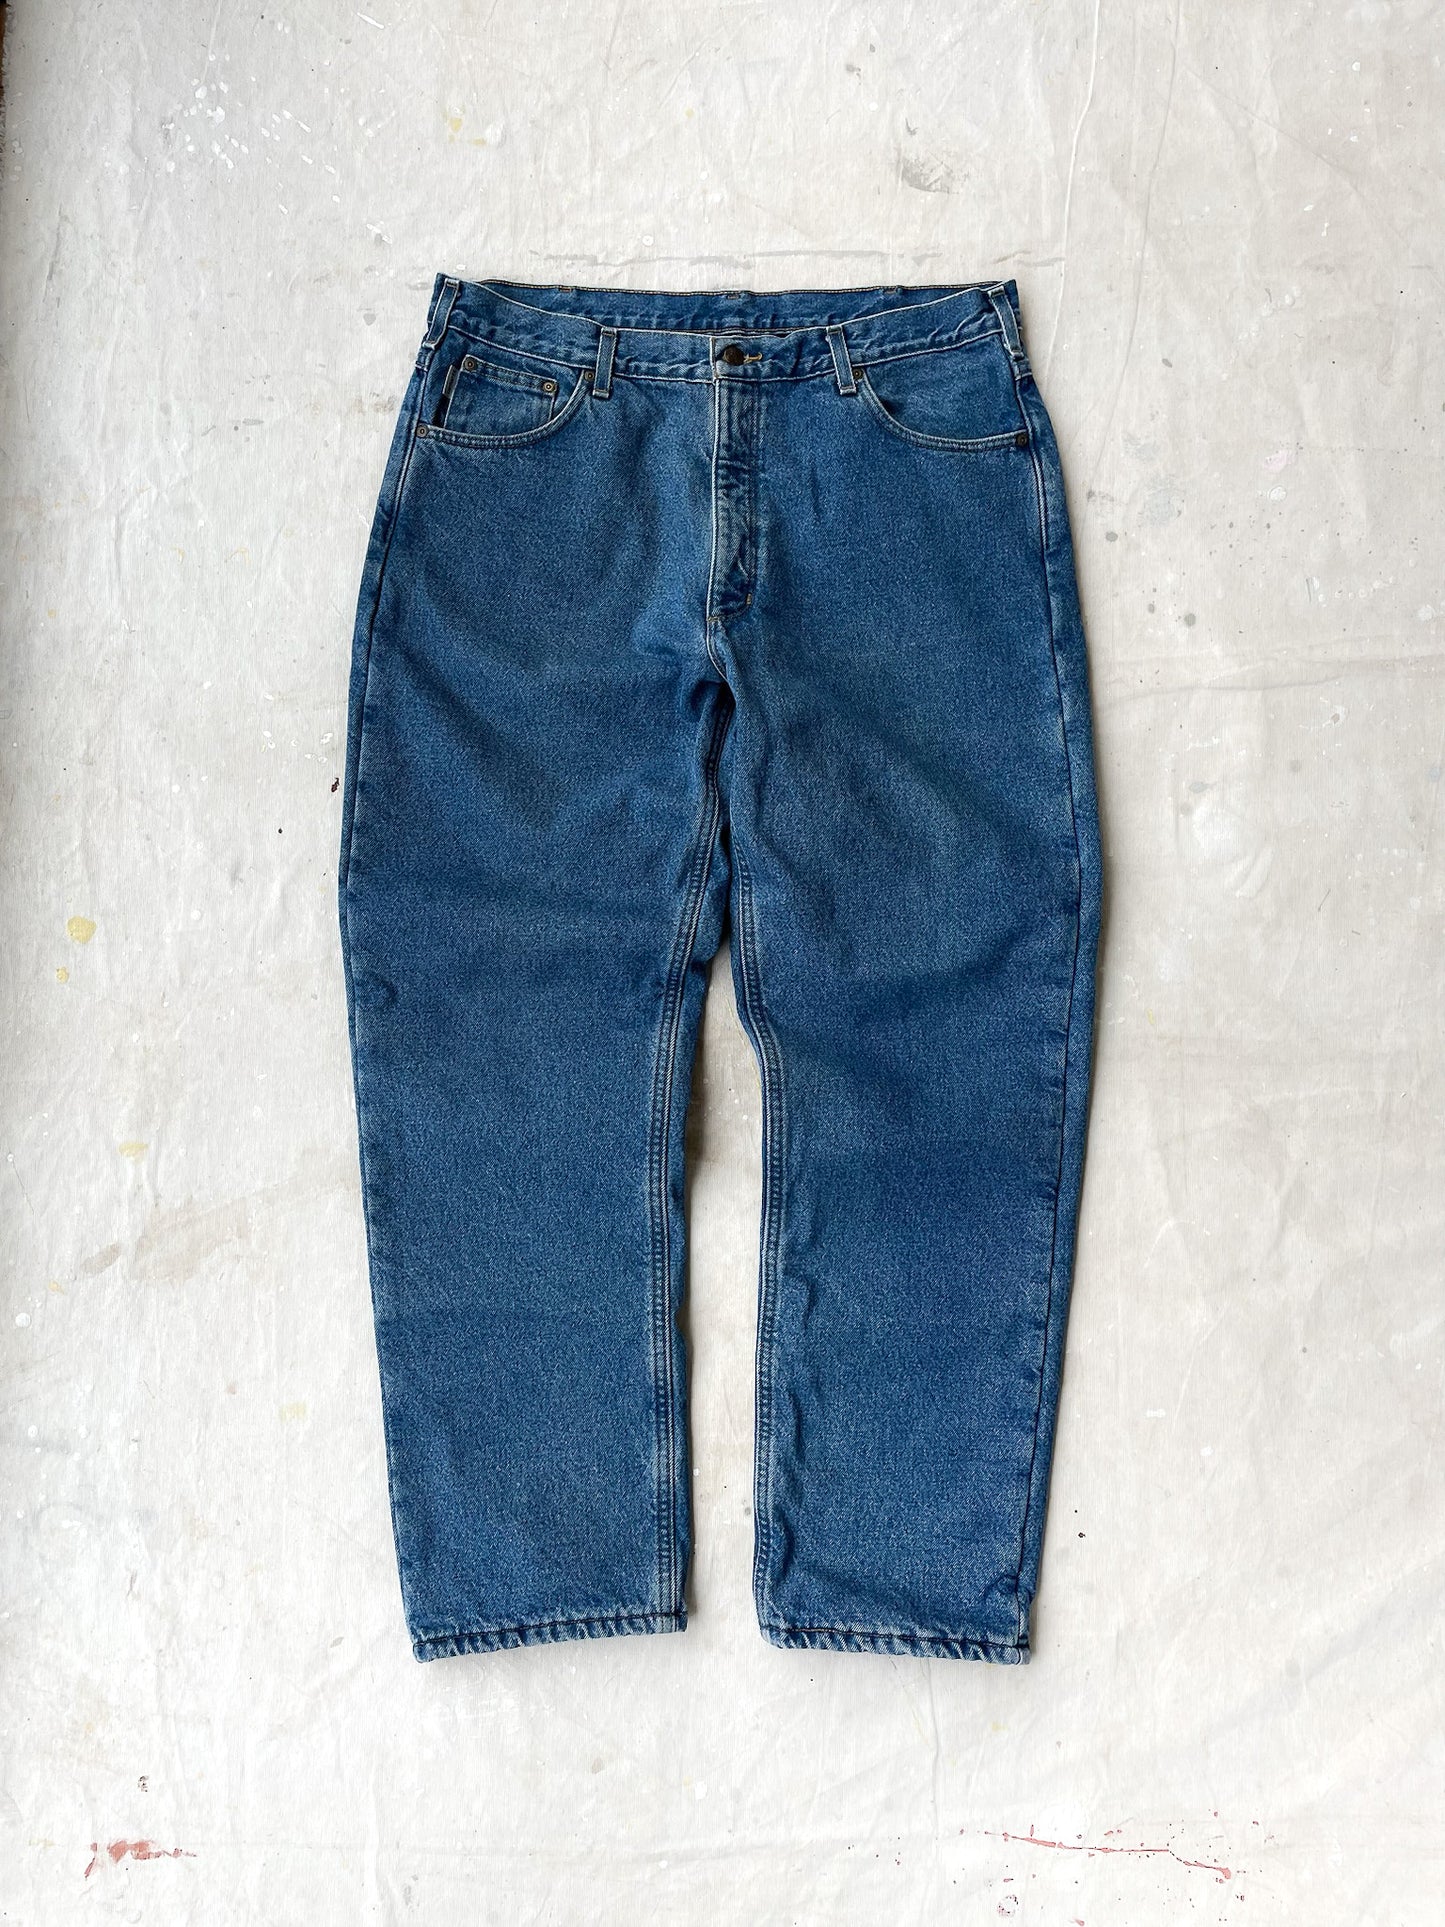 Carhartt Fleece Lined Jeans—[38x32]